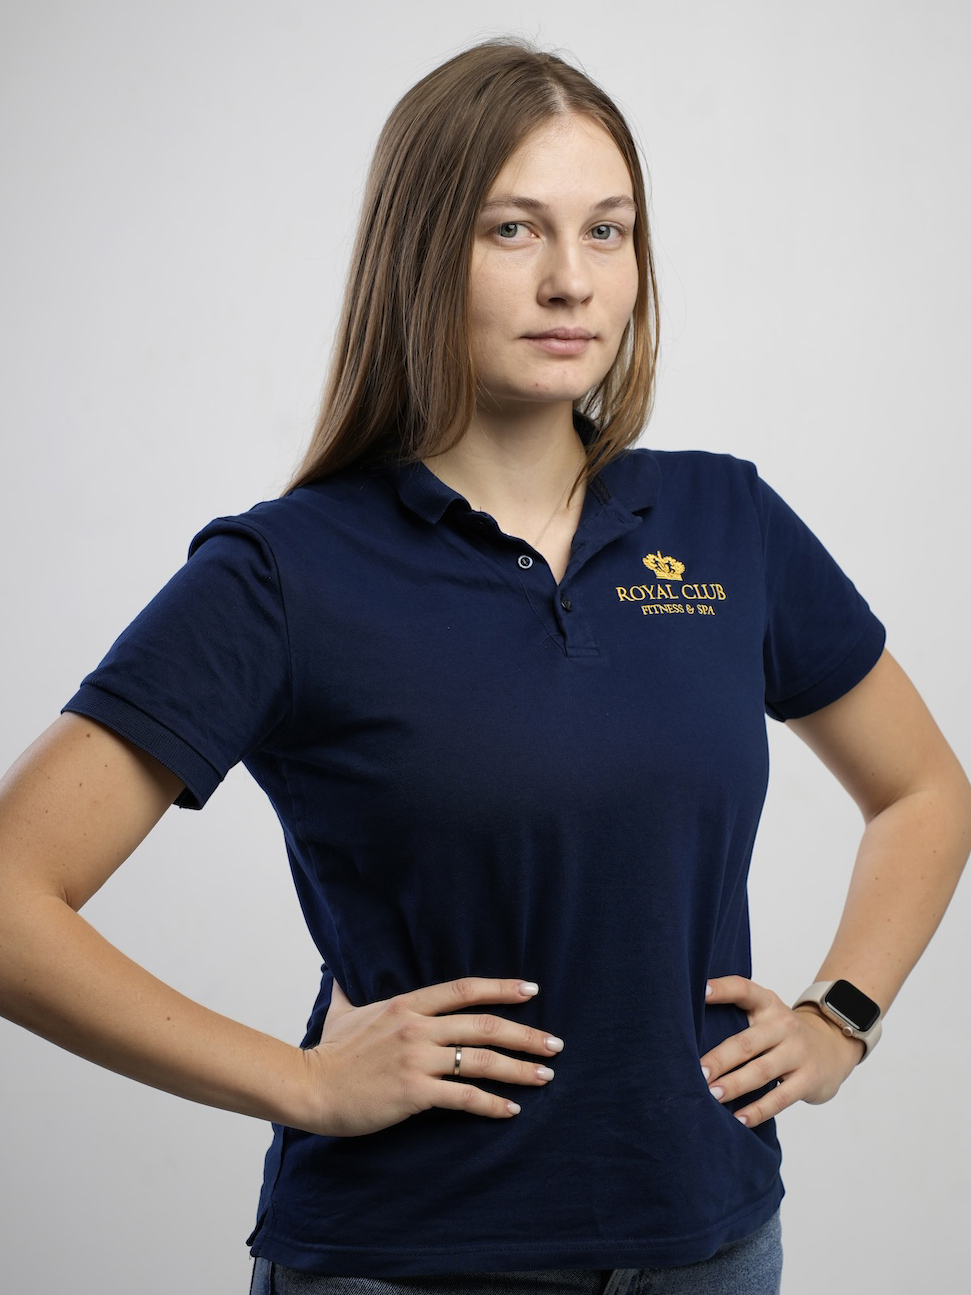 Городецкая Дарья Мастер-тренер водных программ